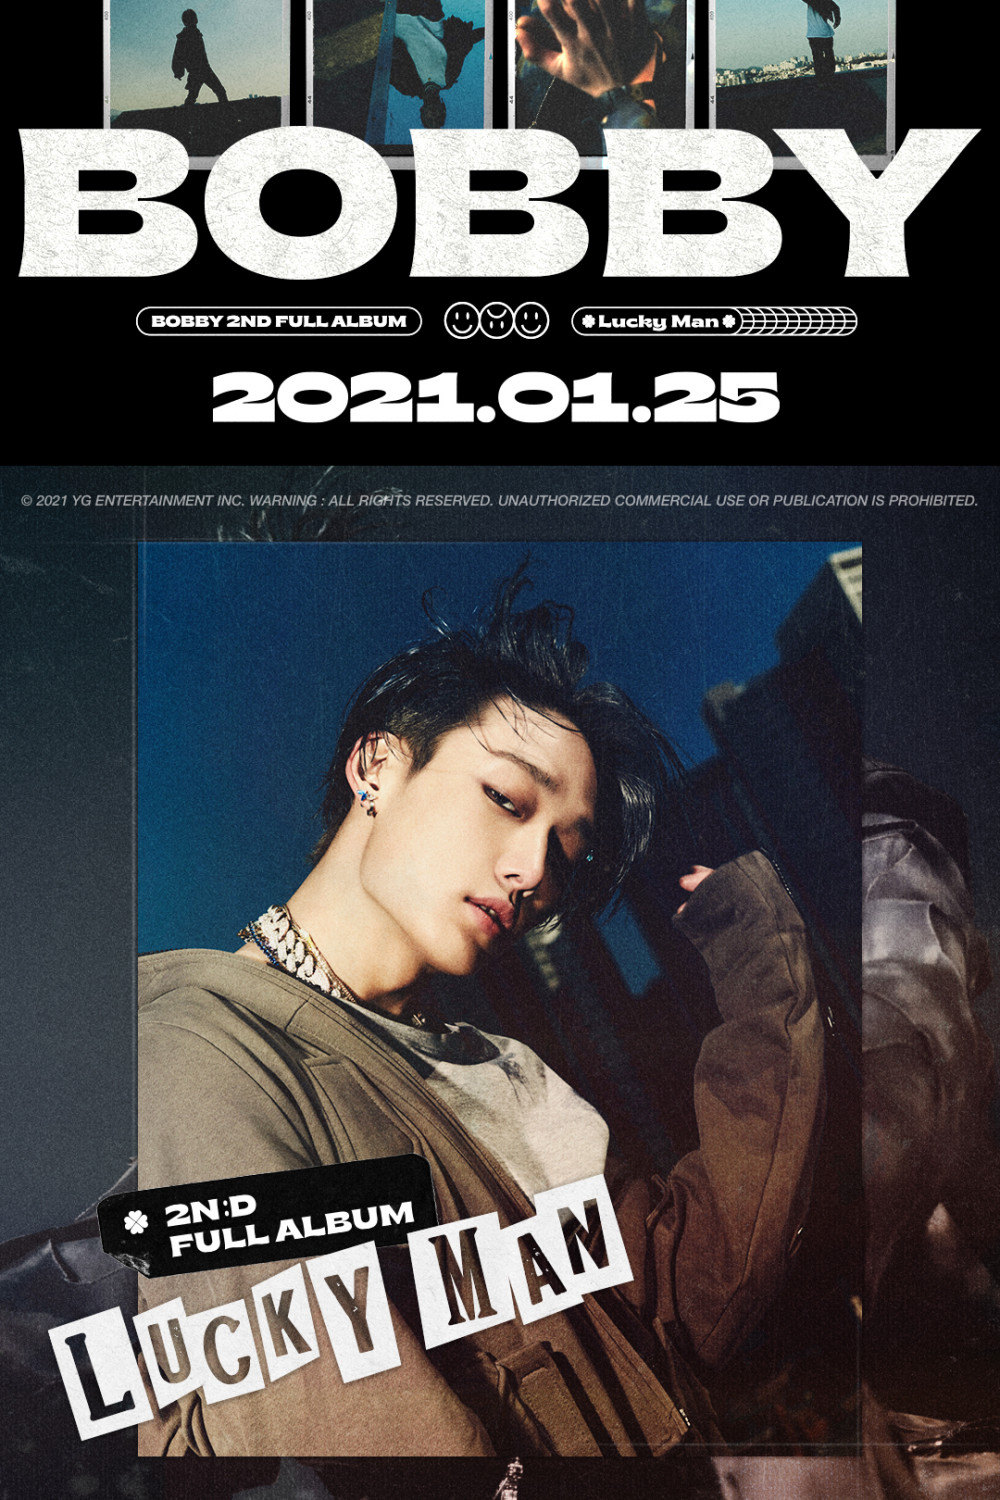 Бобби из iKON опубликовал харизматичный тизер-постер для своего второго полноформатного альбома «Lucky Man»